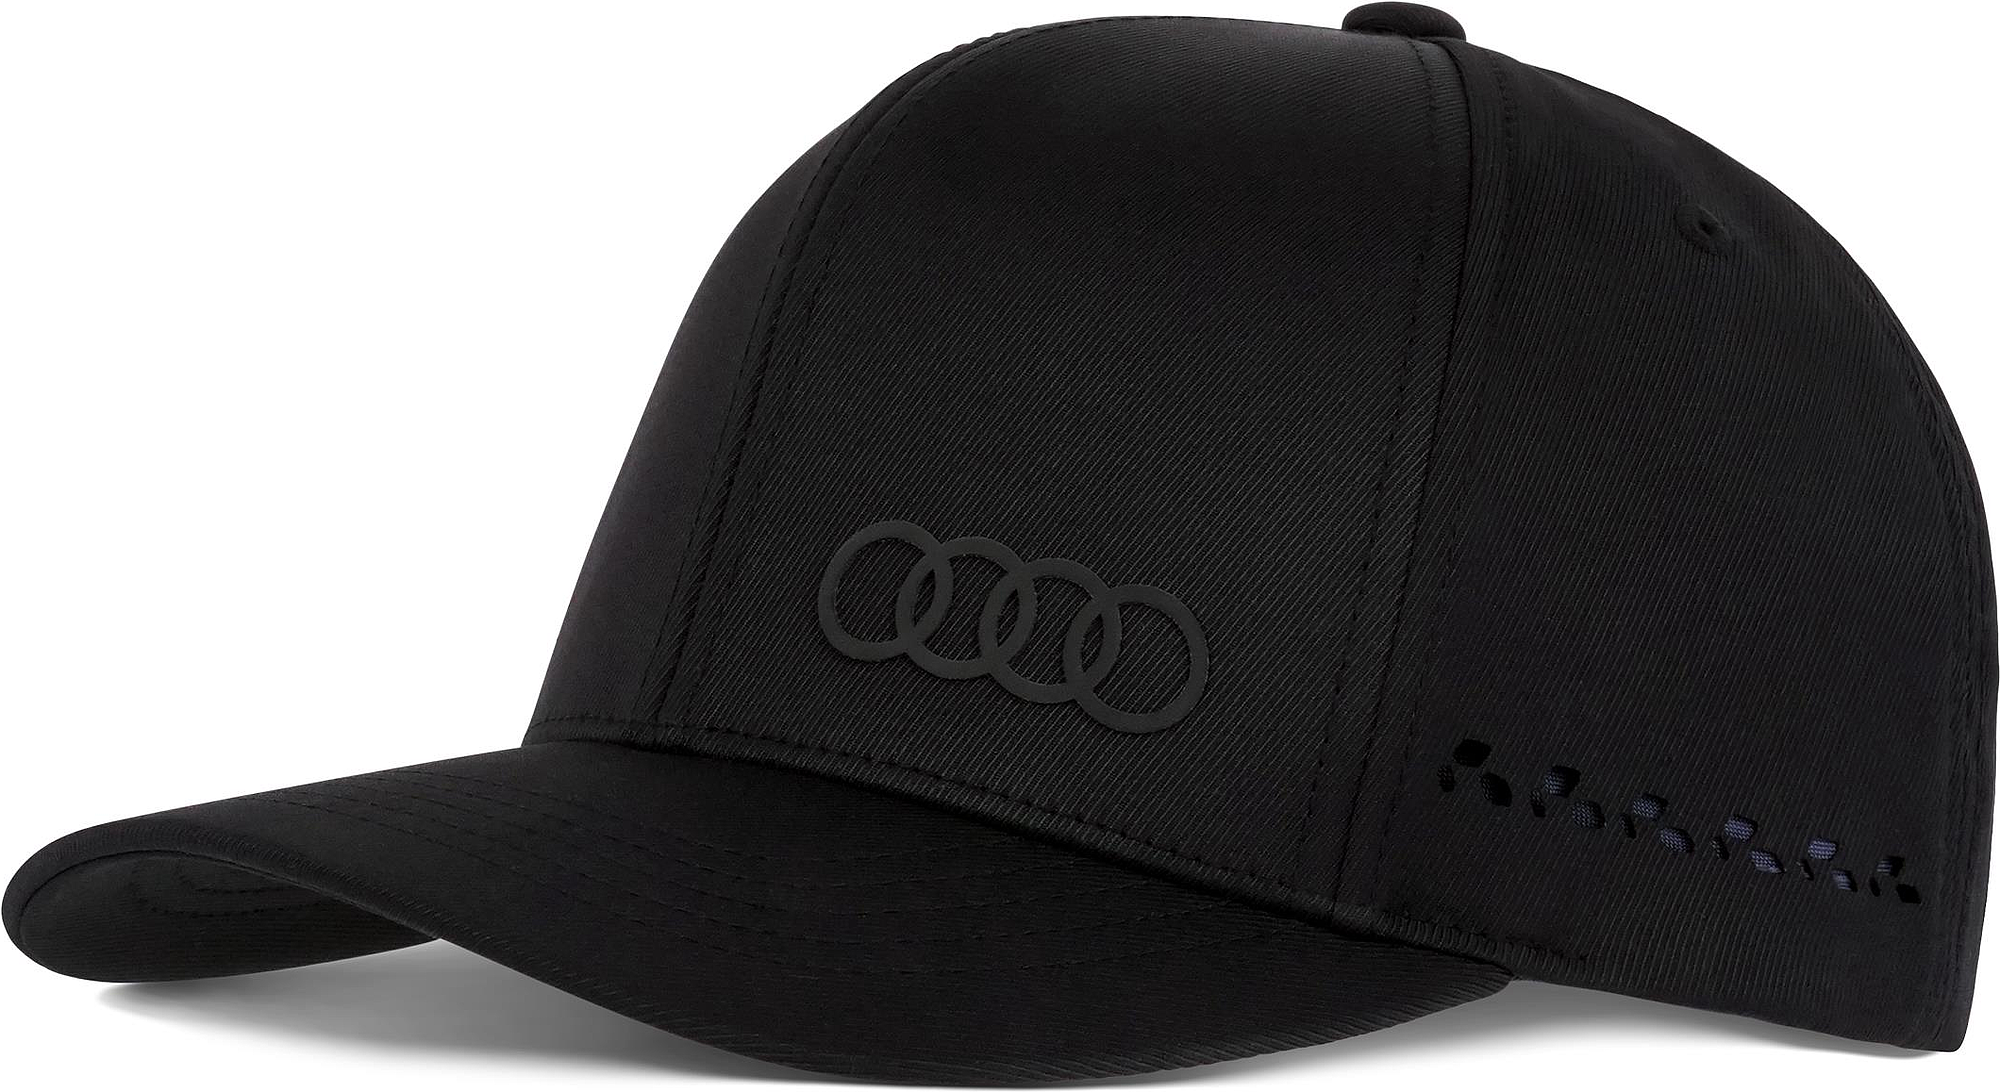 Audi - Audi Tec casquette, noir